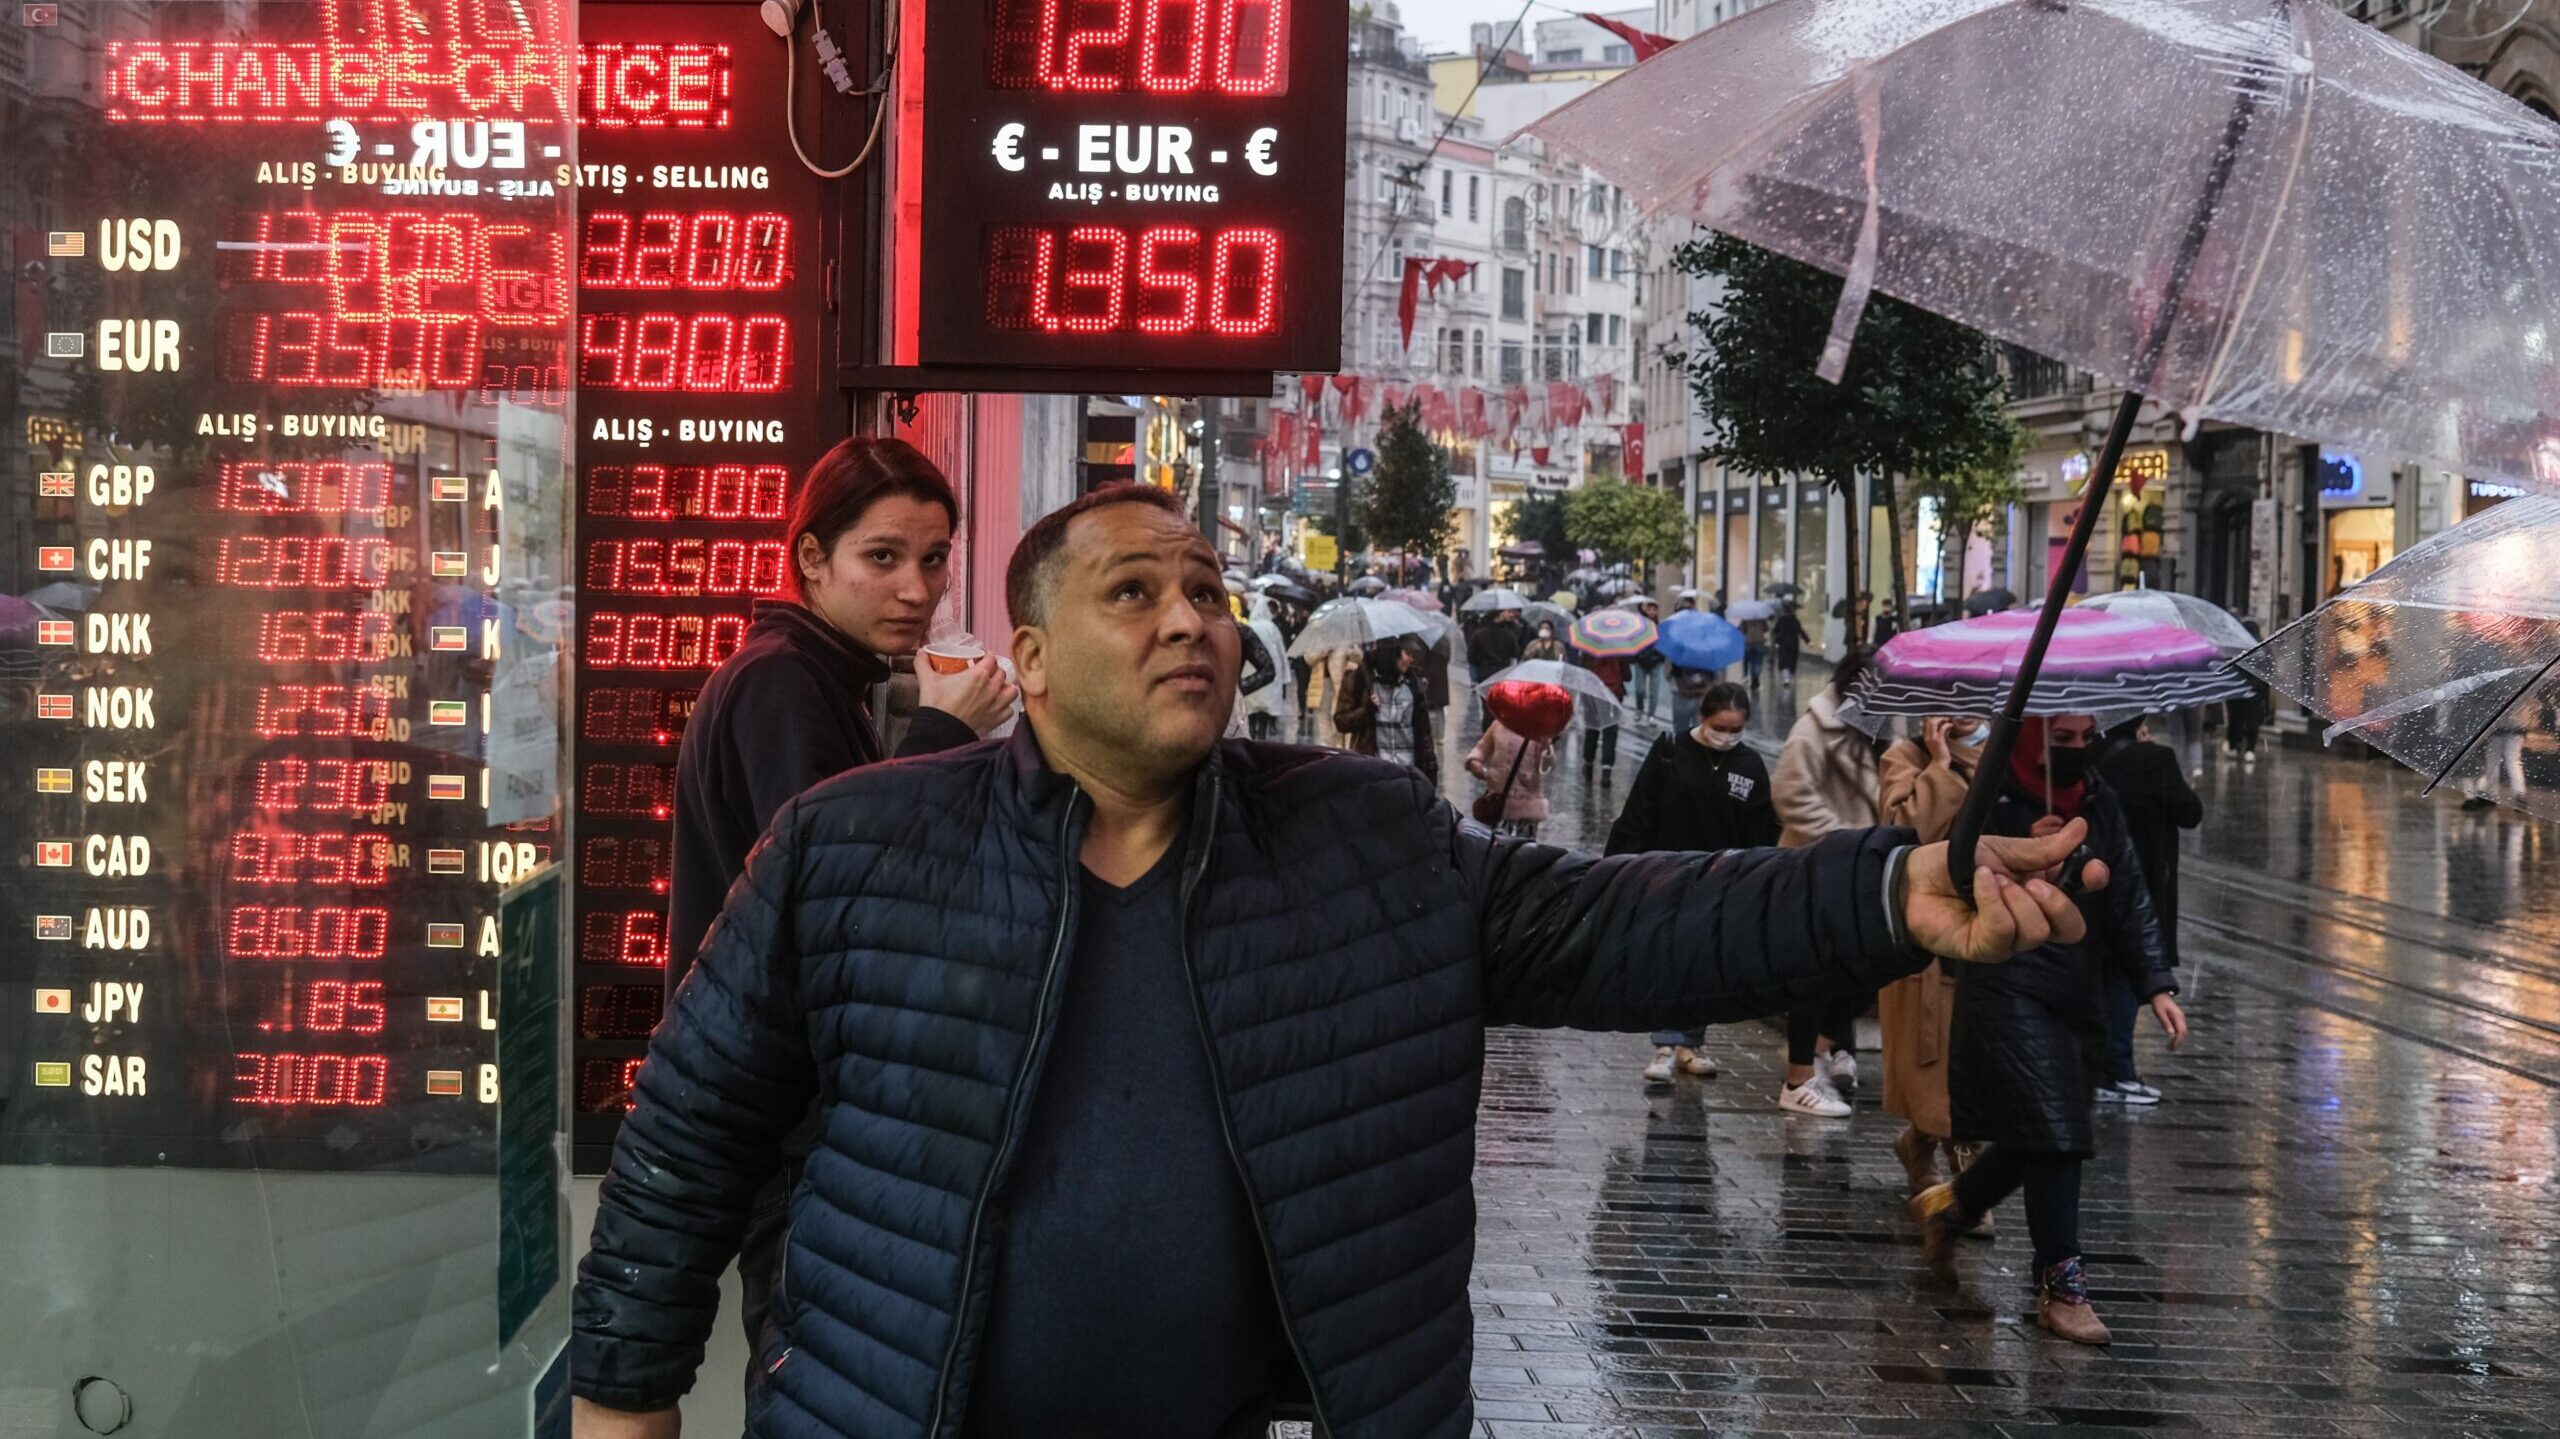 La lira turca registra caídas de hasta el 13% y se sitúa en su mínimo histórico tras un nuevo recorte de tipos